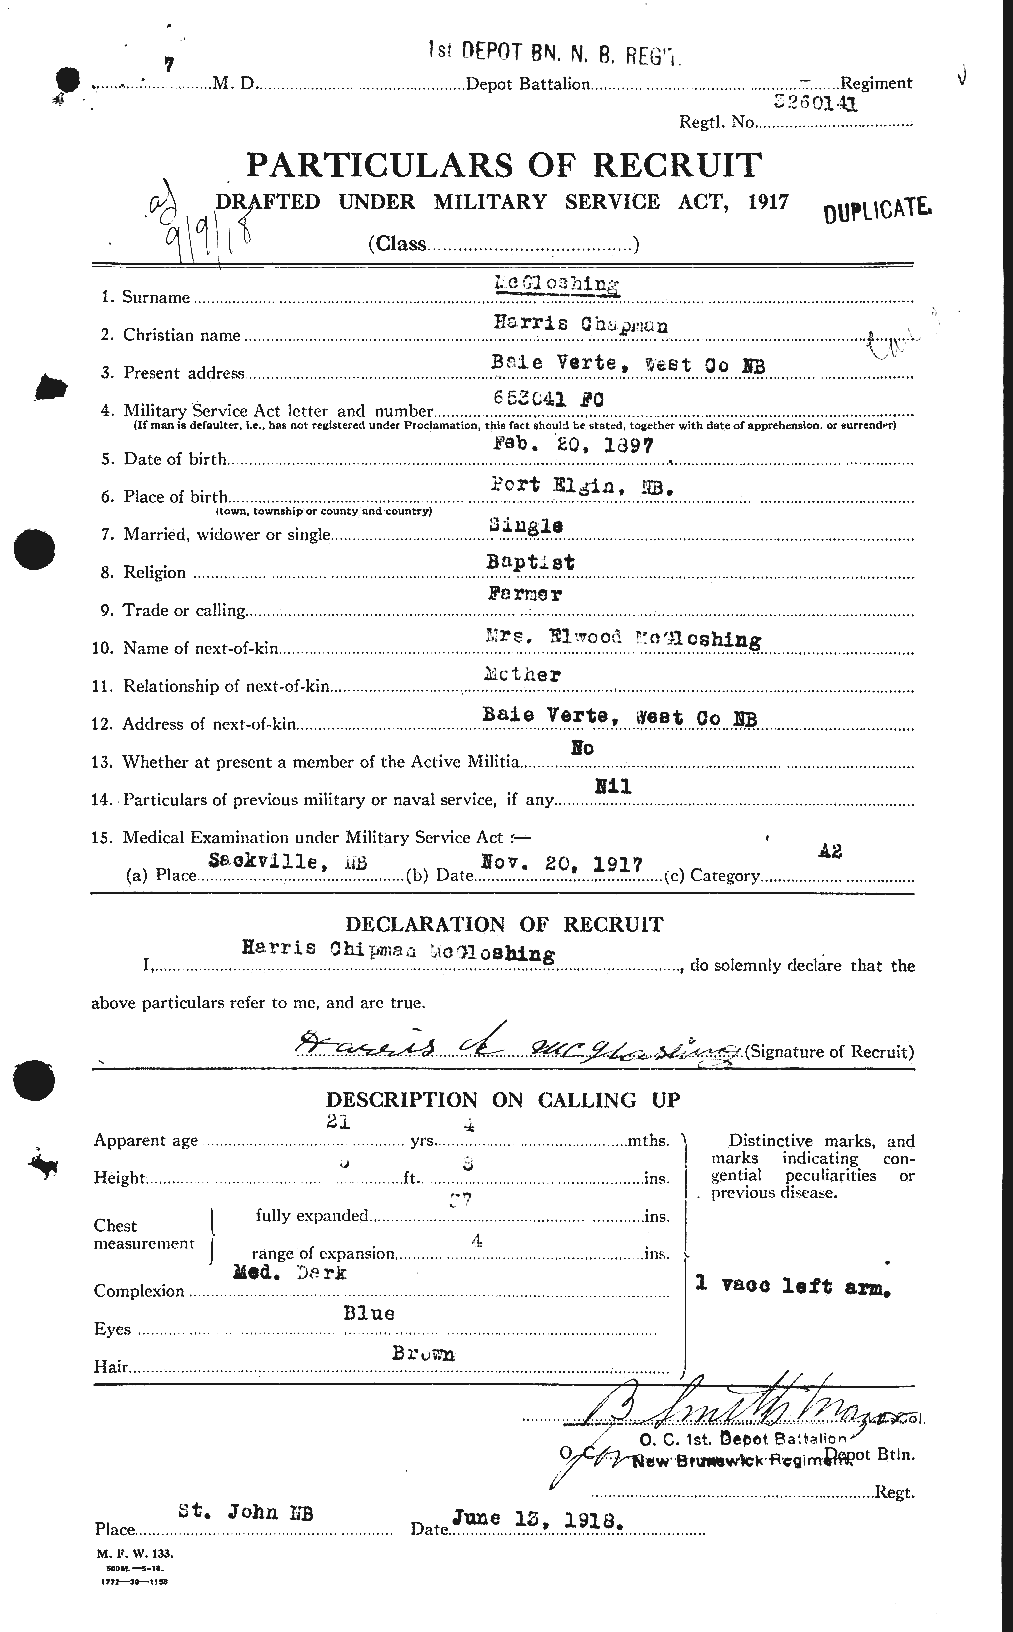 Dossiers du Personnel de la Première Guerre mondiale - CEC 528460a